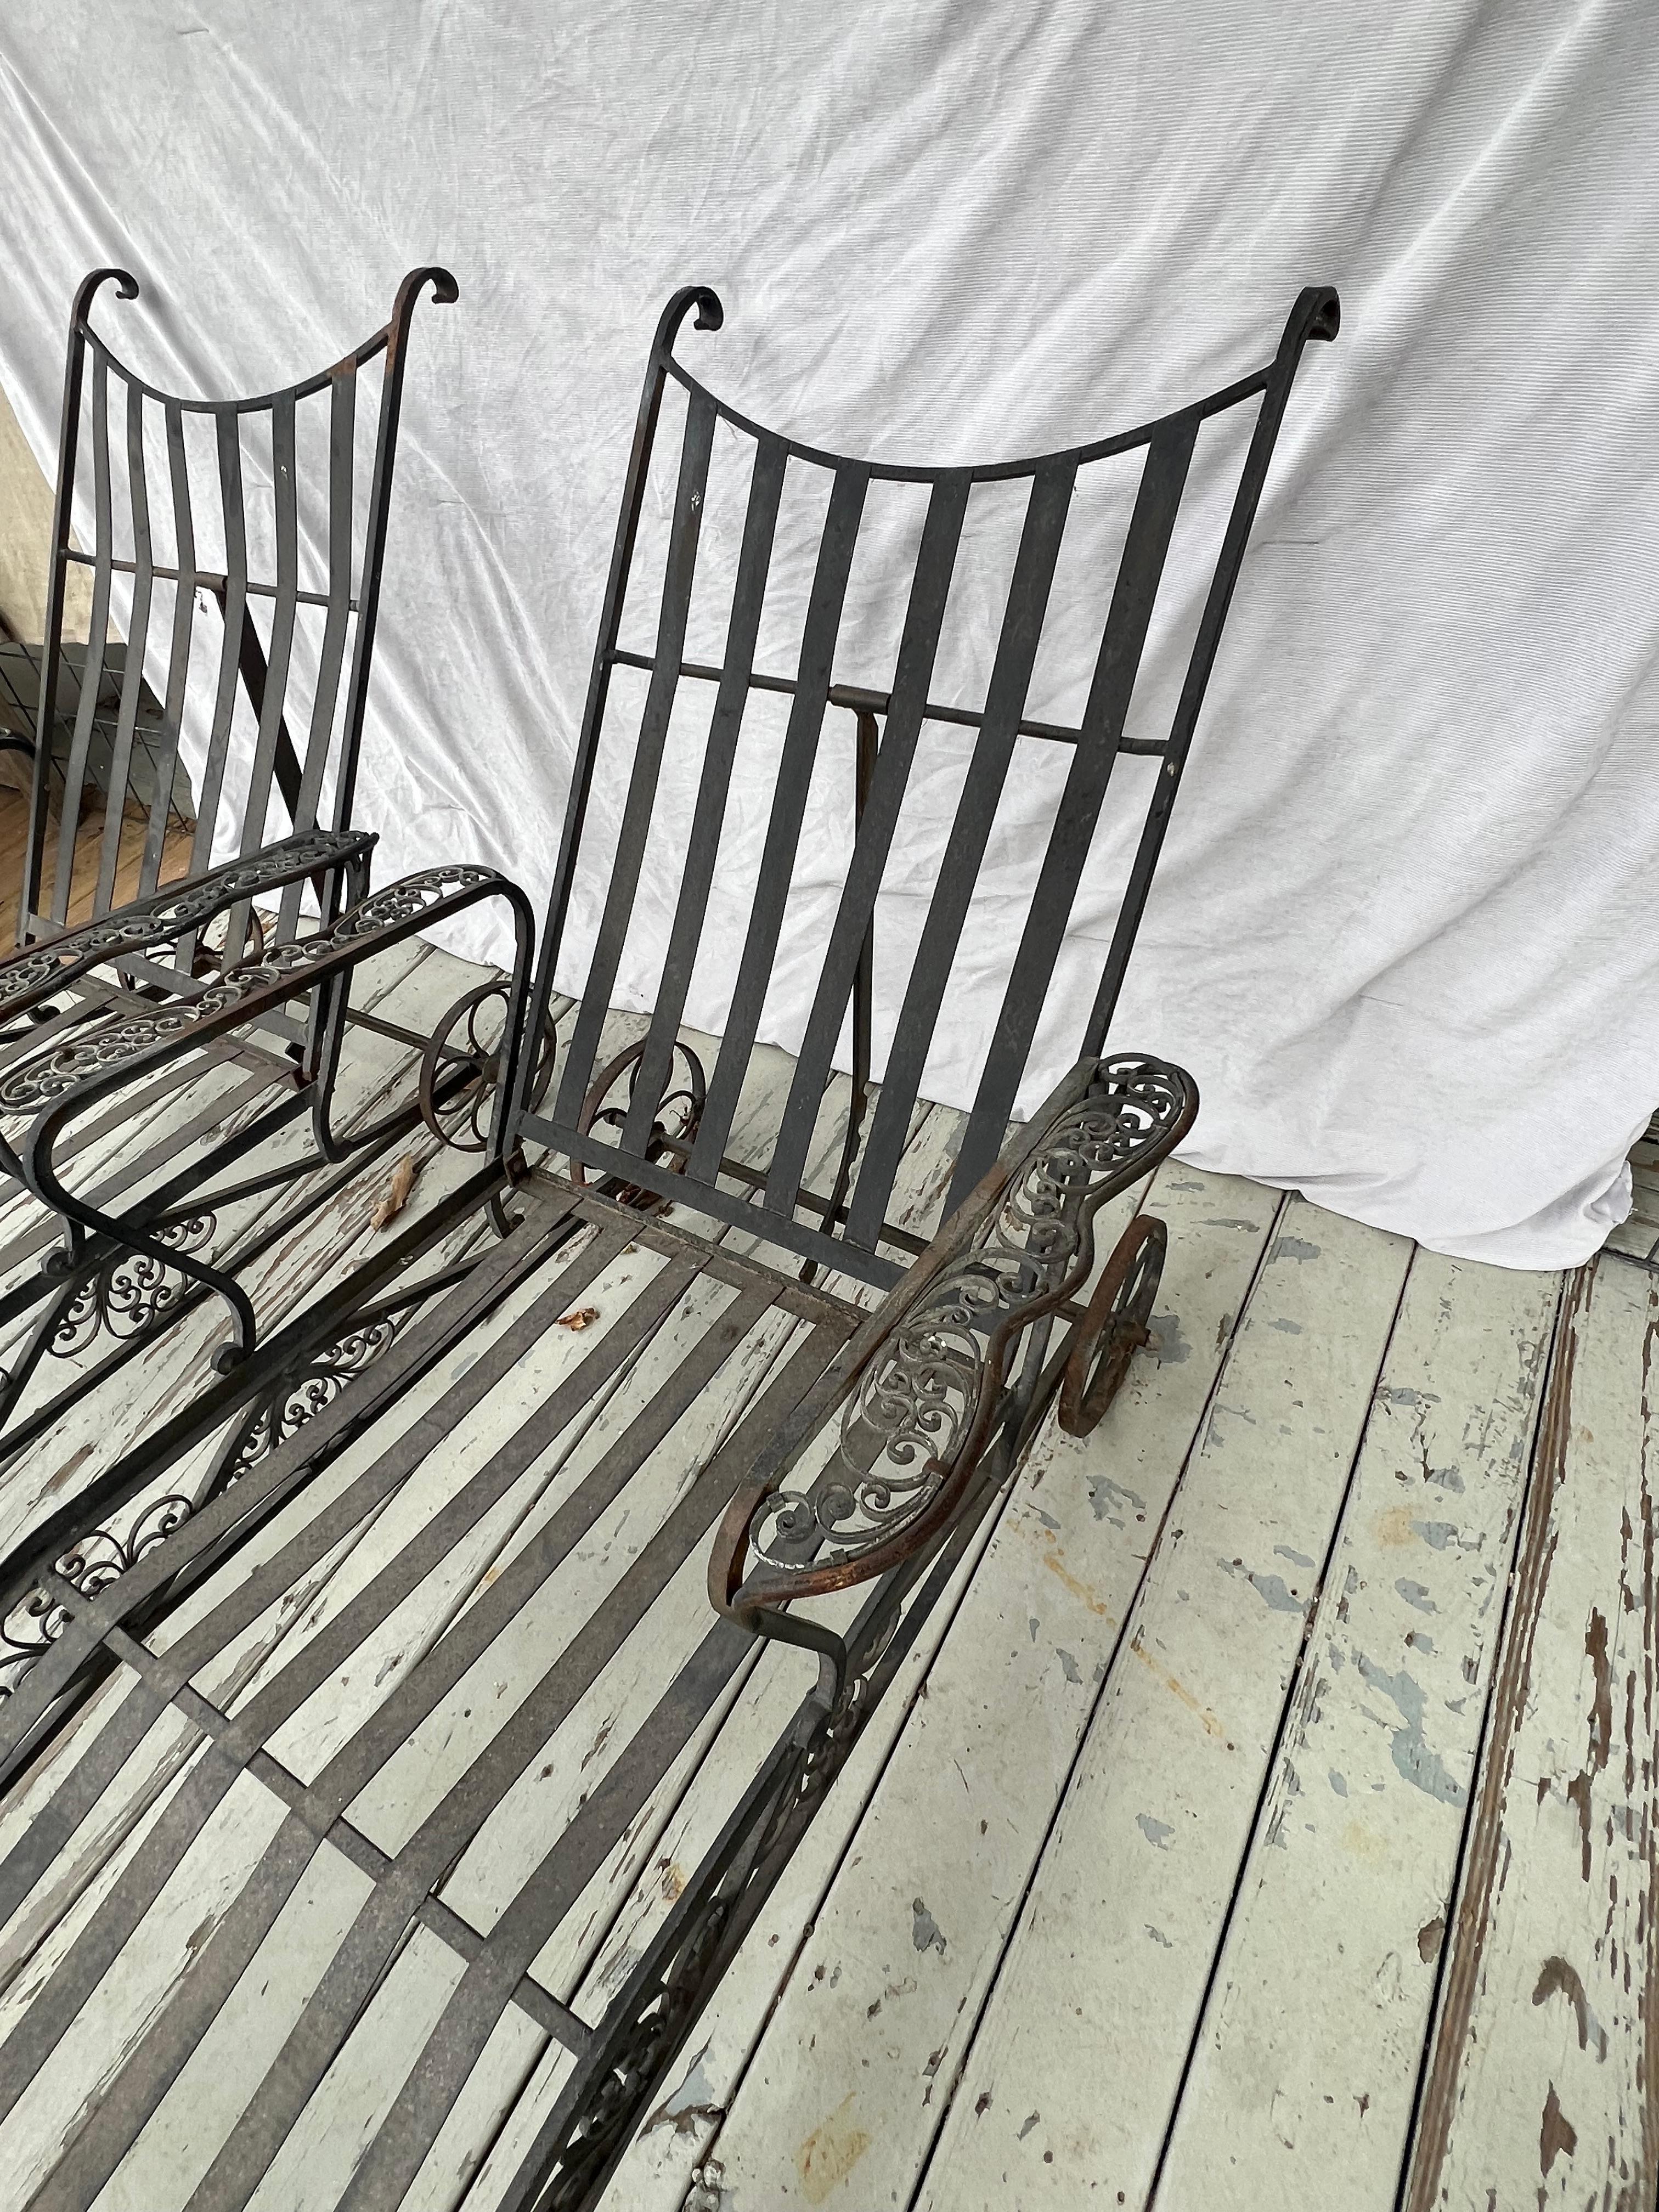 Paire de chaises longues en fer forgé attribuées à Salterini et datant du milieu du XXe siècle.  Ces salons finement ouvragés présentent un magnifique motif de volutes, des dossiers réglables et des roues pour faciliter le transport.  Ils sont très